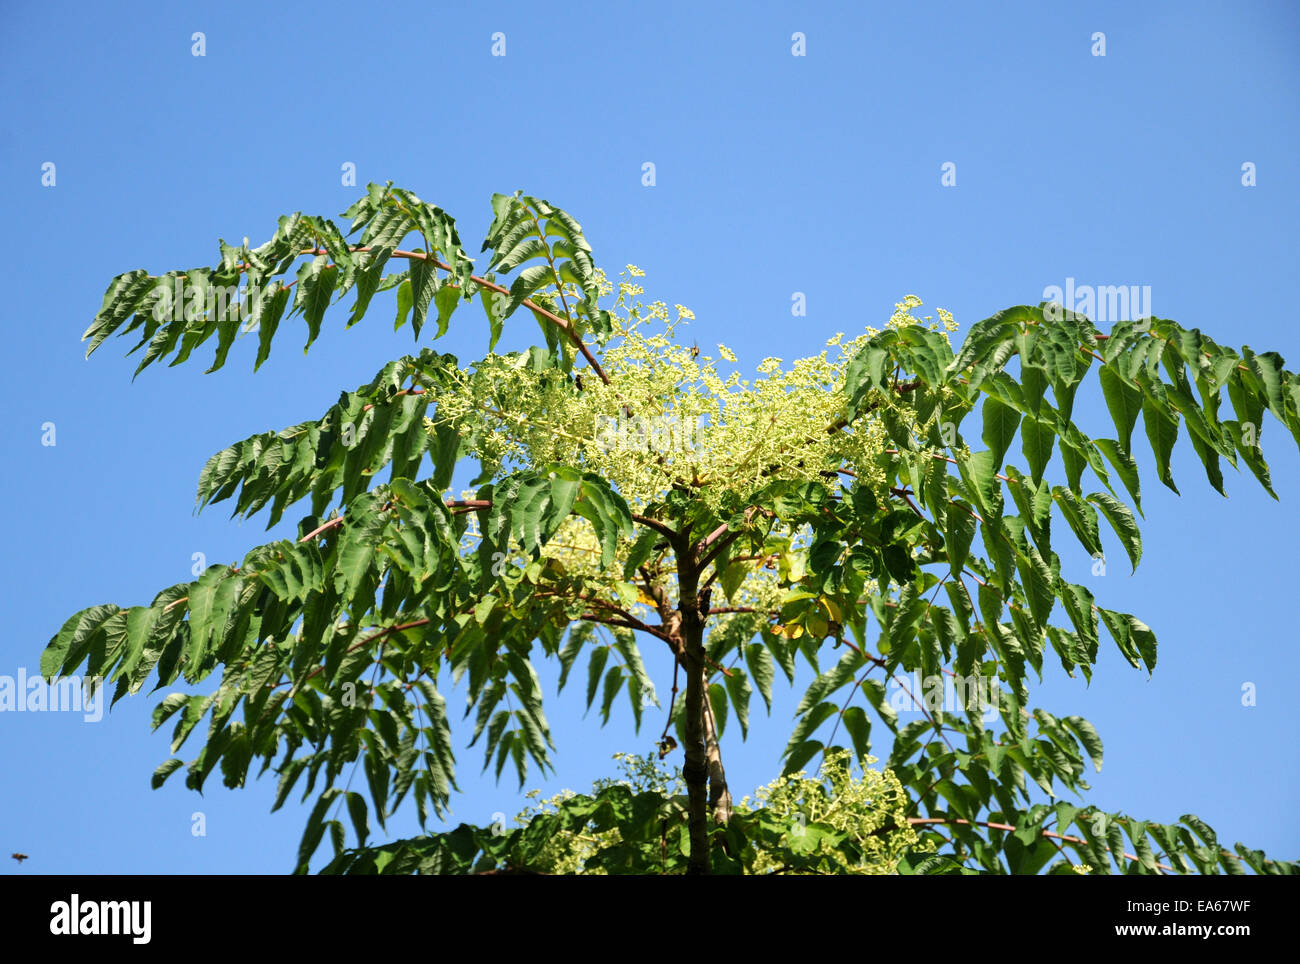 Japanese angelica tree Stock Photo